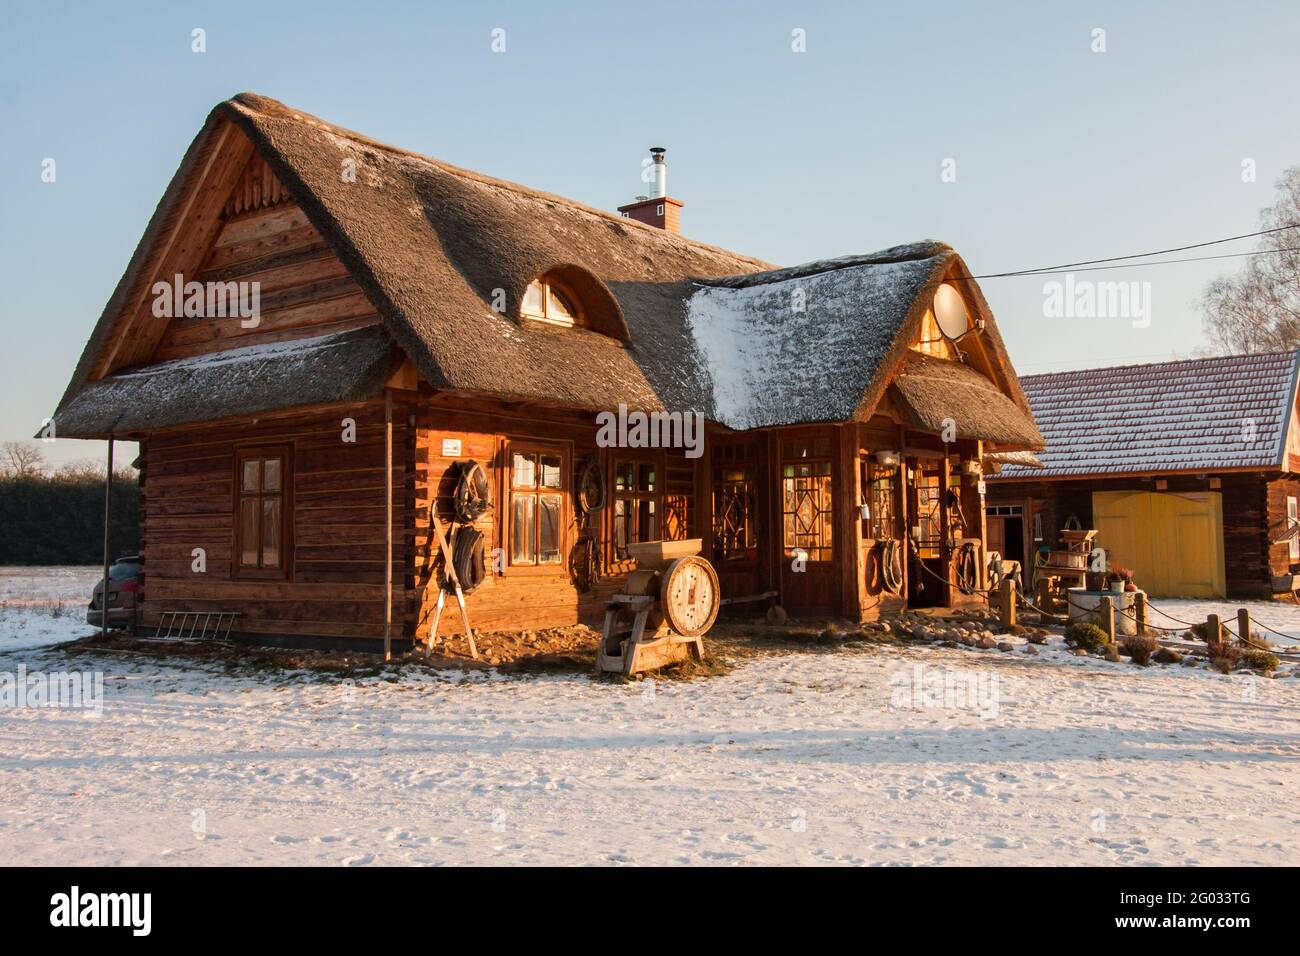 Polonia Gennaio - 2017: Bella casa di legno con tetto di paglia nei raggi del sole invernale. Edificio vecchio e originale che e' stato rinnovato. Europa orientale. Foto Stock